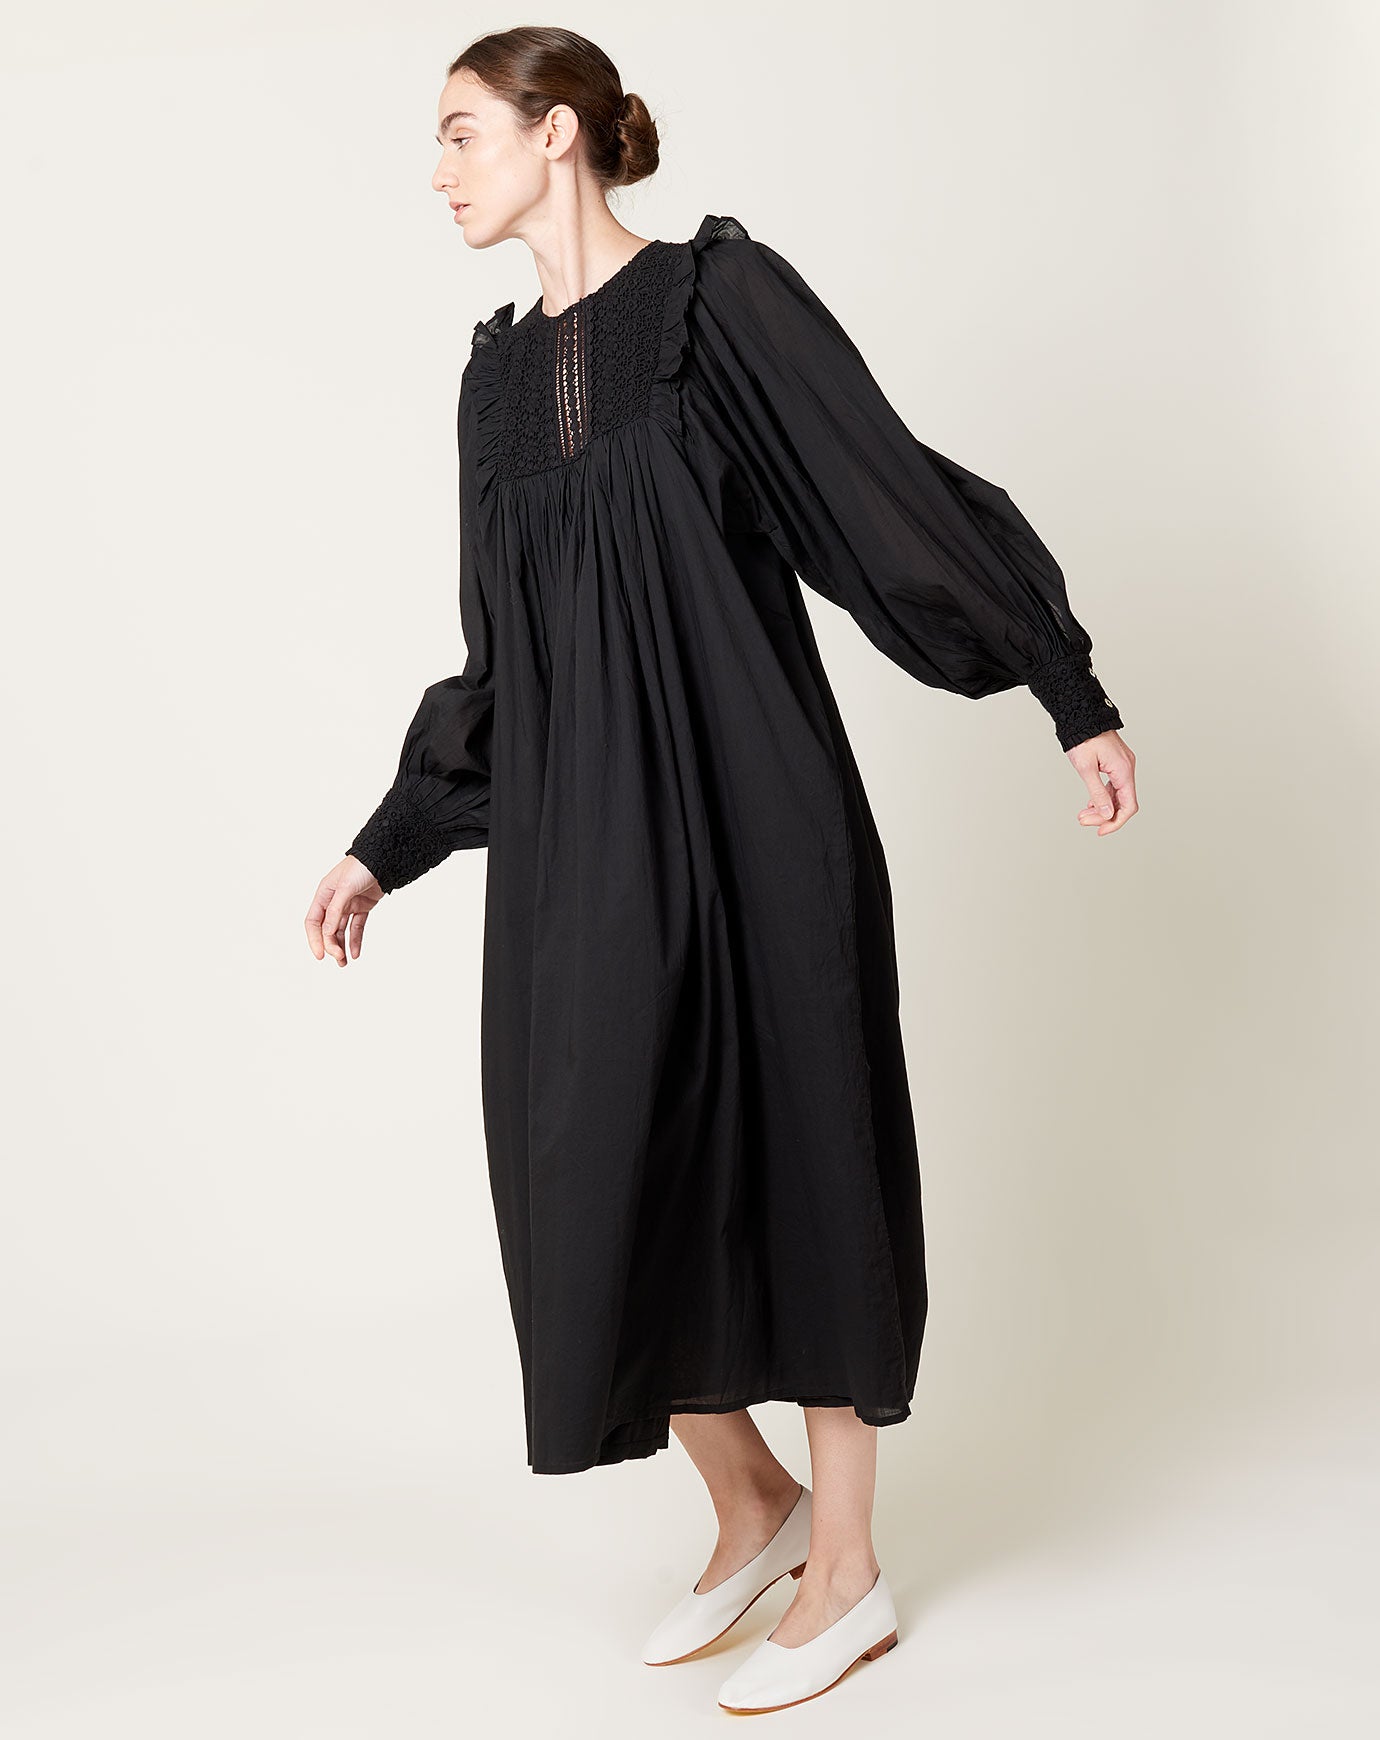 Skall Studio Phoebe Dress in Black